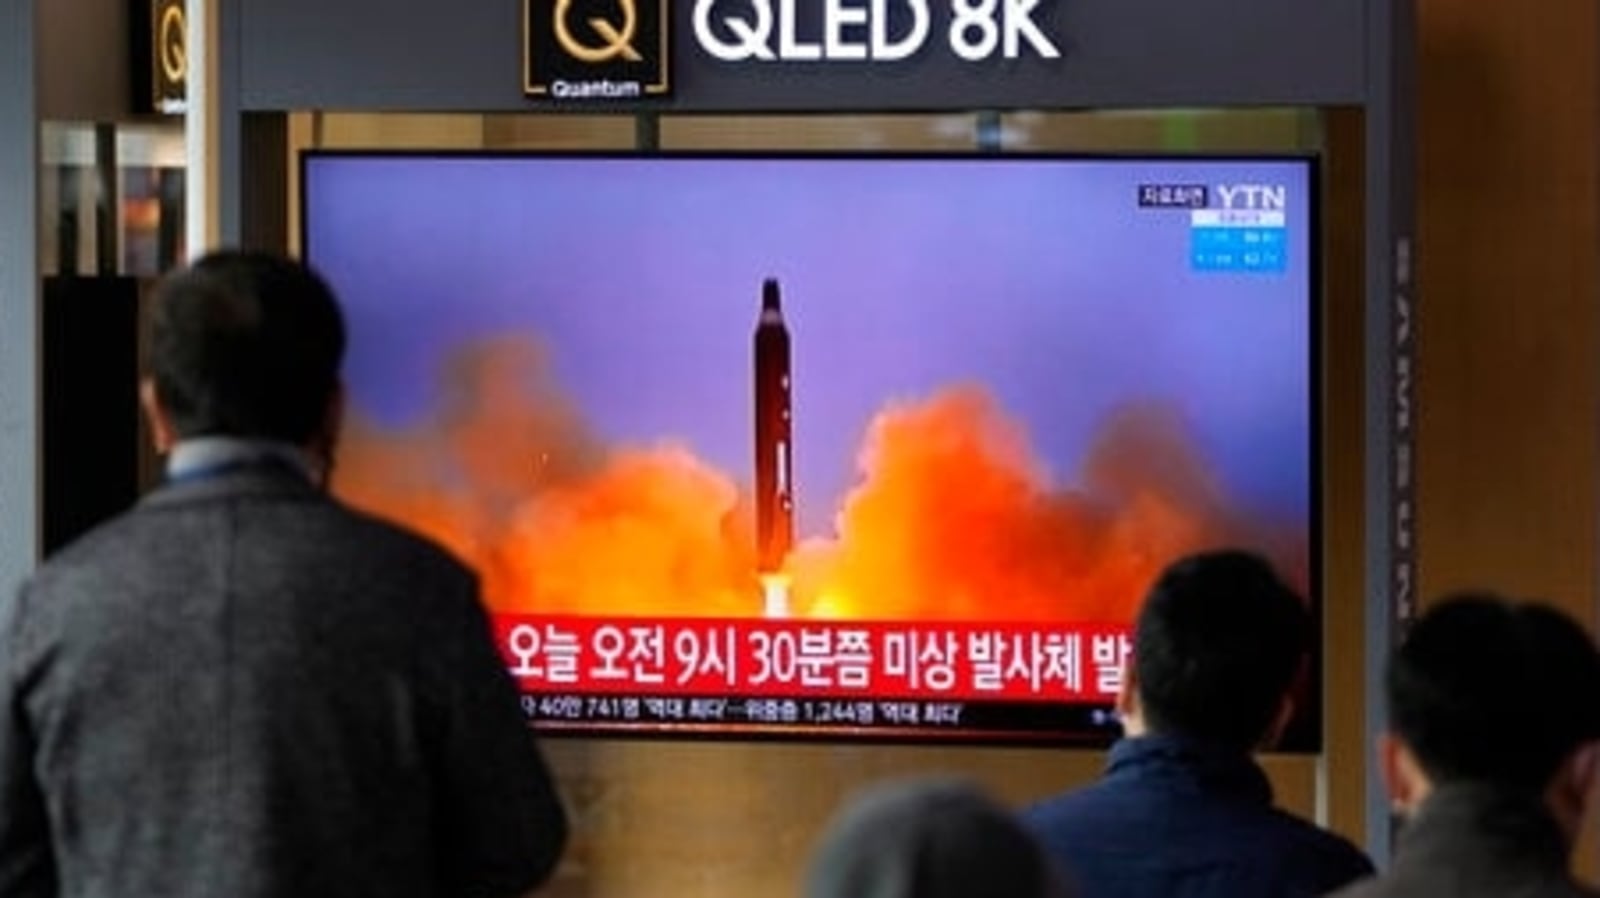 Kim Jong Un led North Korea missile test ‘failed', South Korea says ...